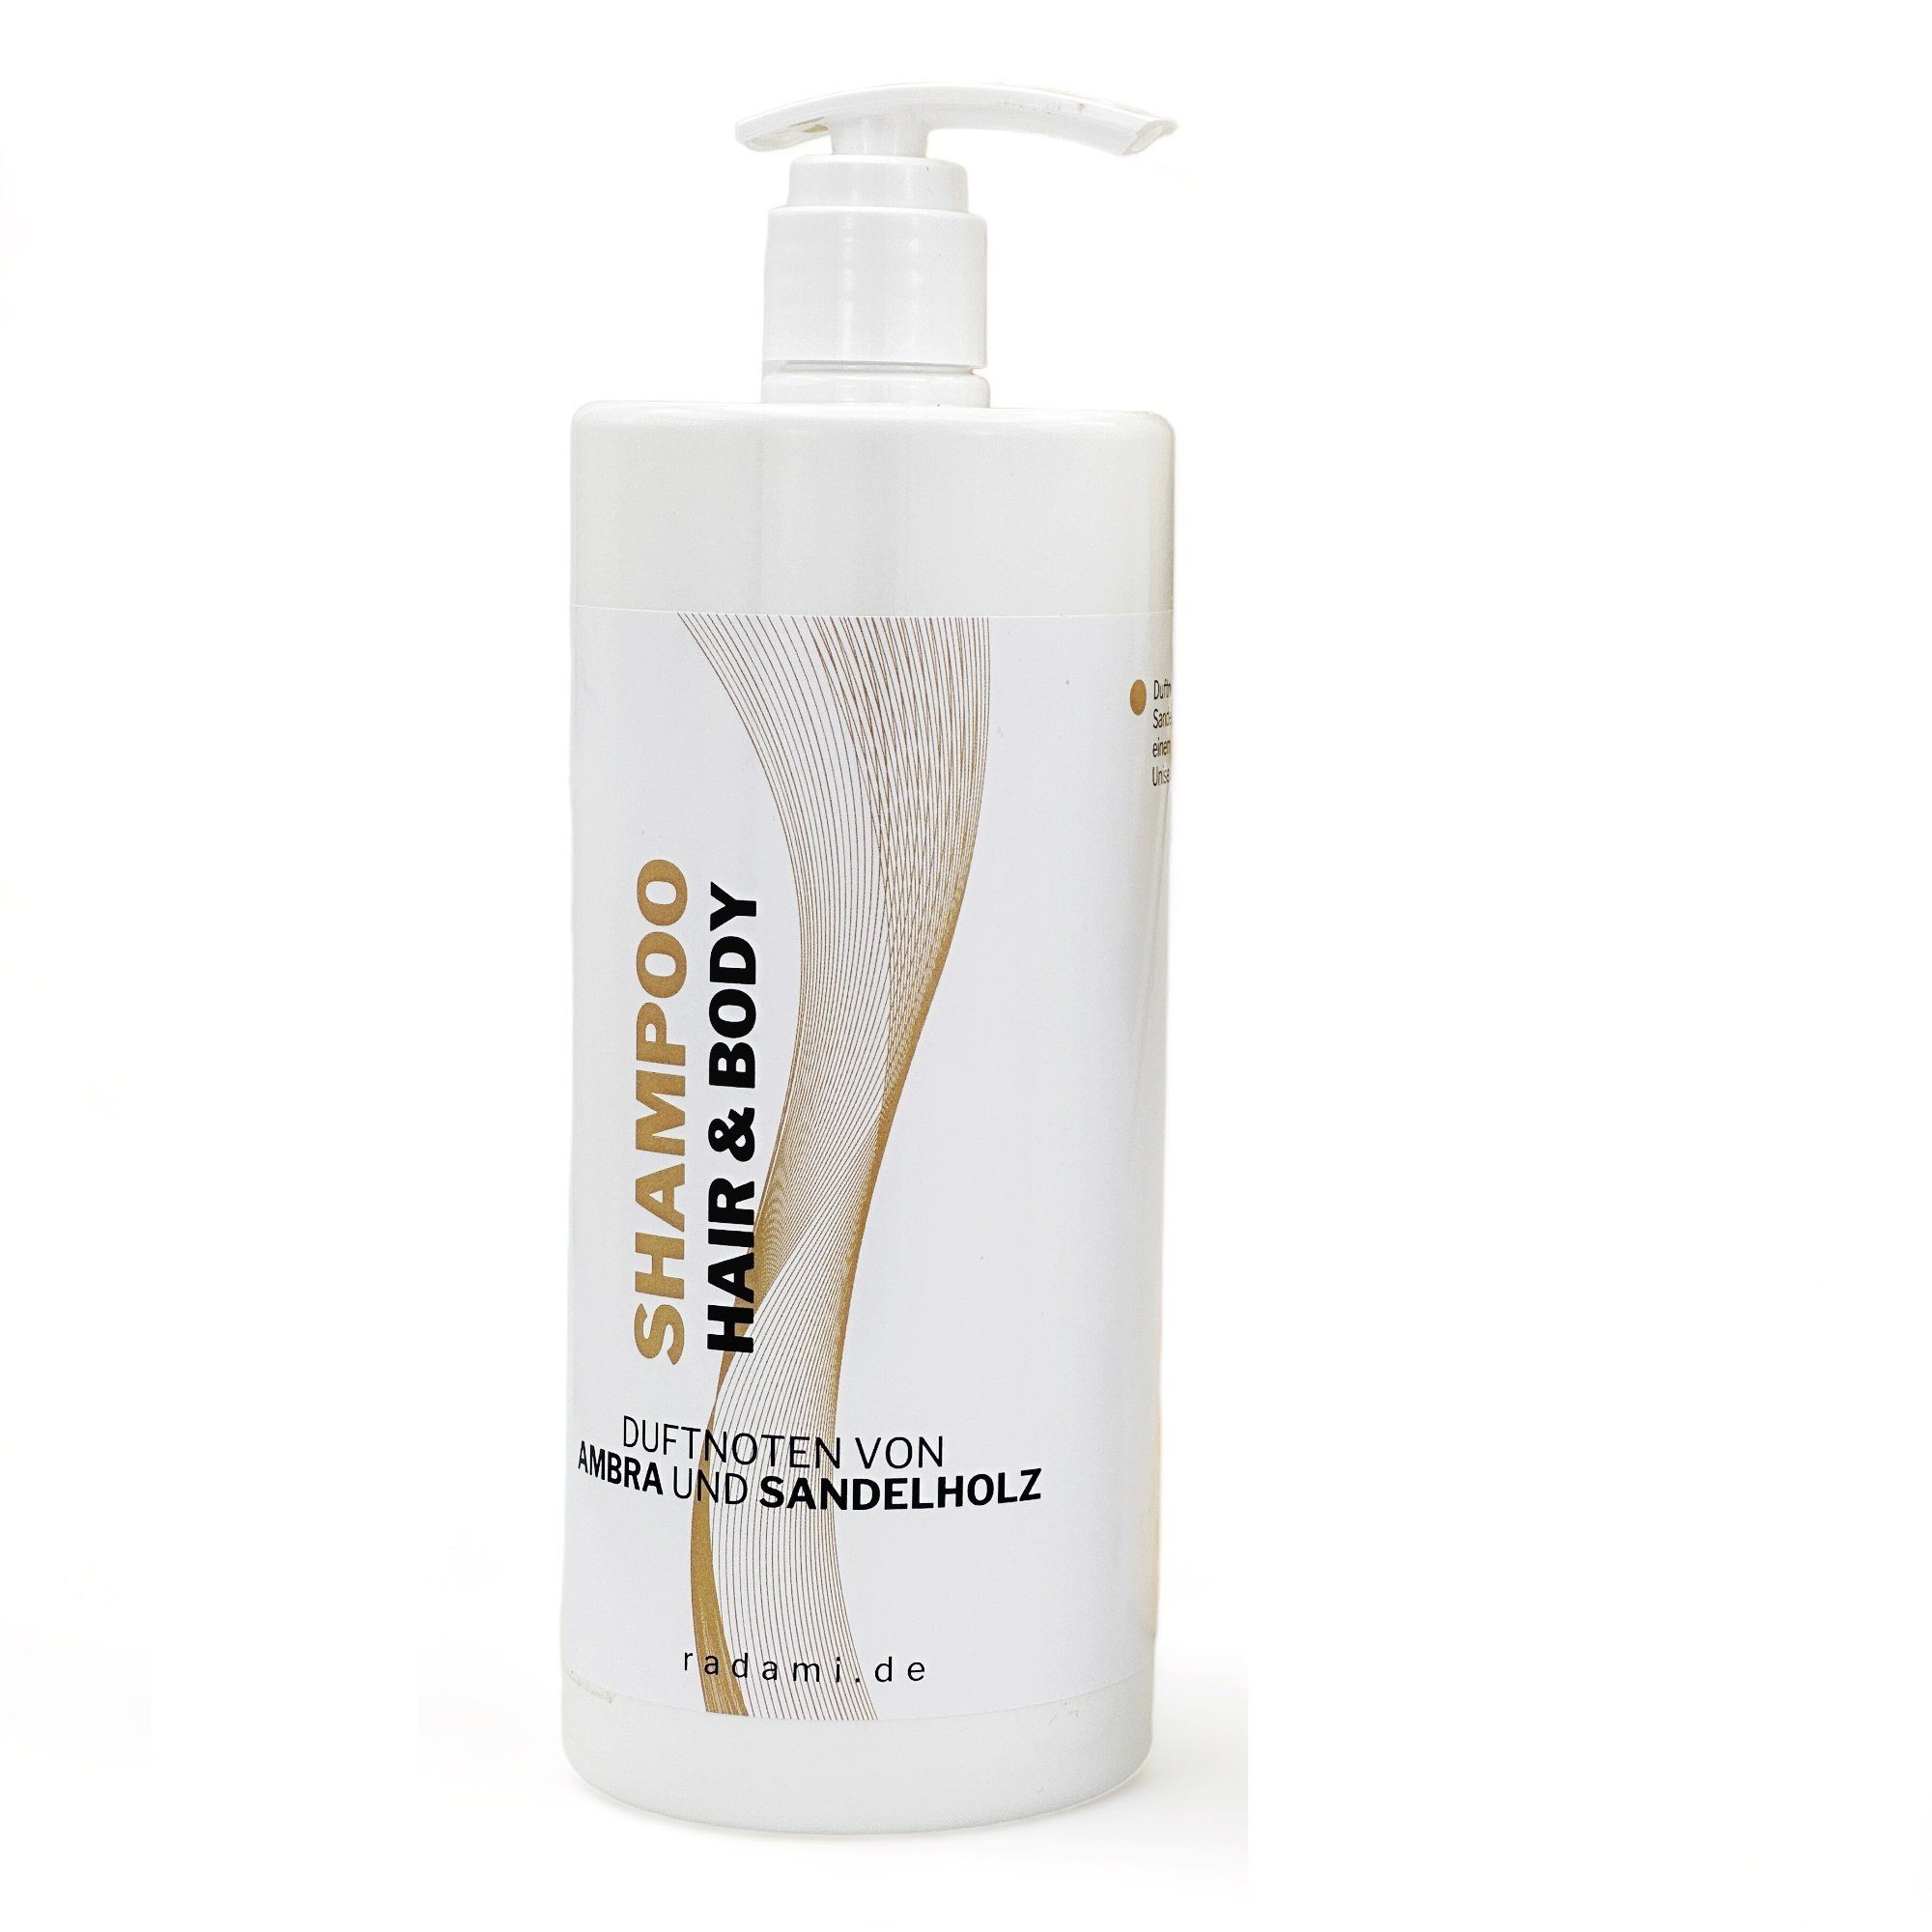 Radami Rohrreinigungspistole Shampoo Hair und Body Duschgel Duft Ambra / Sandelholz 1 L